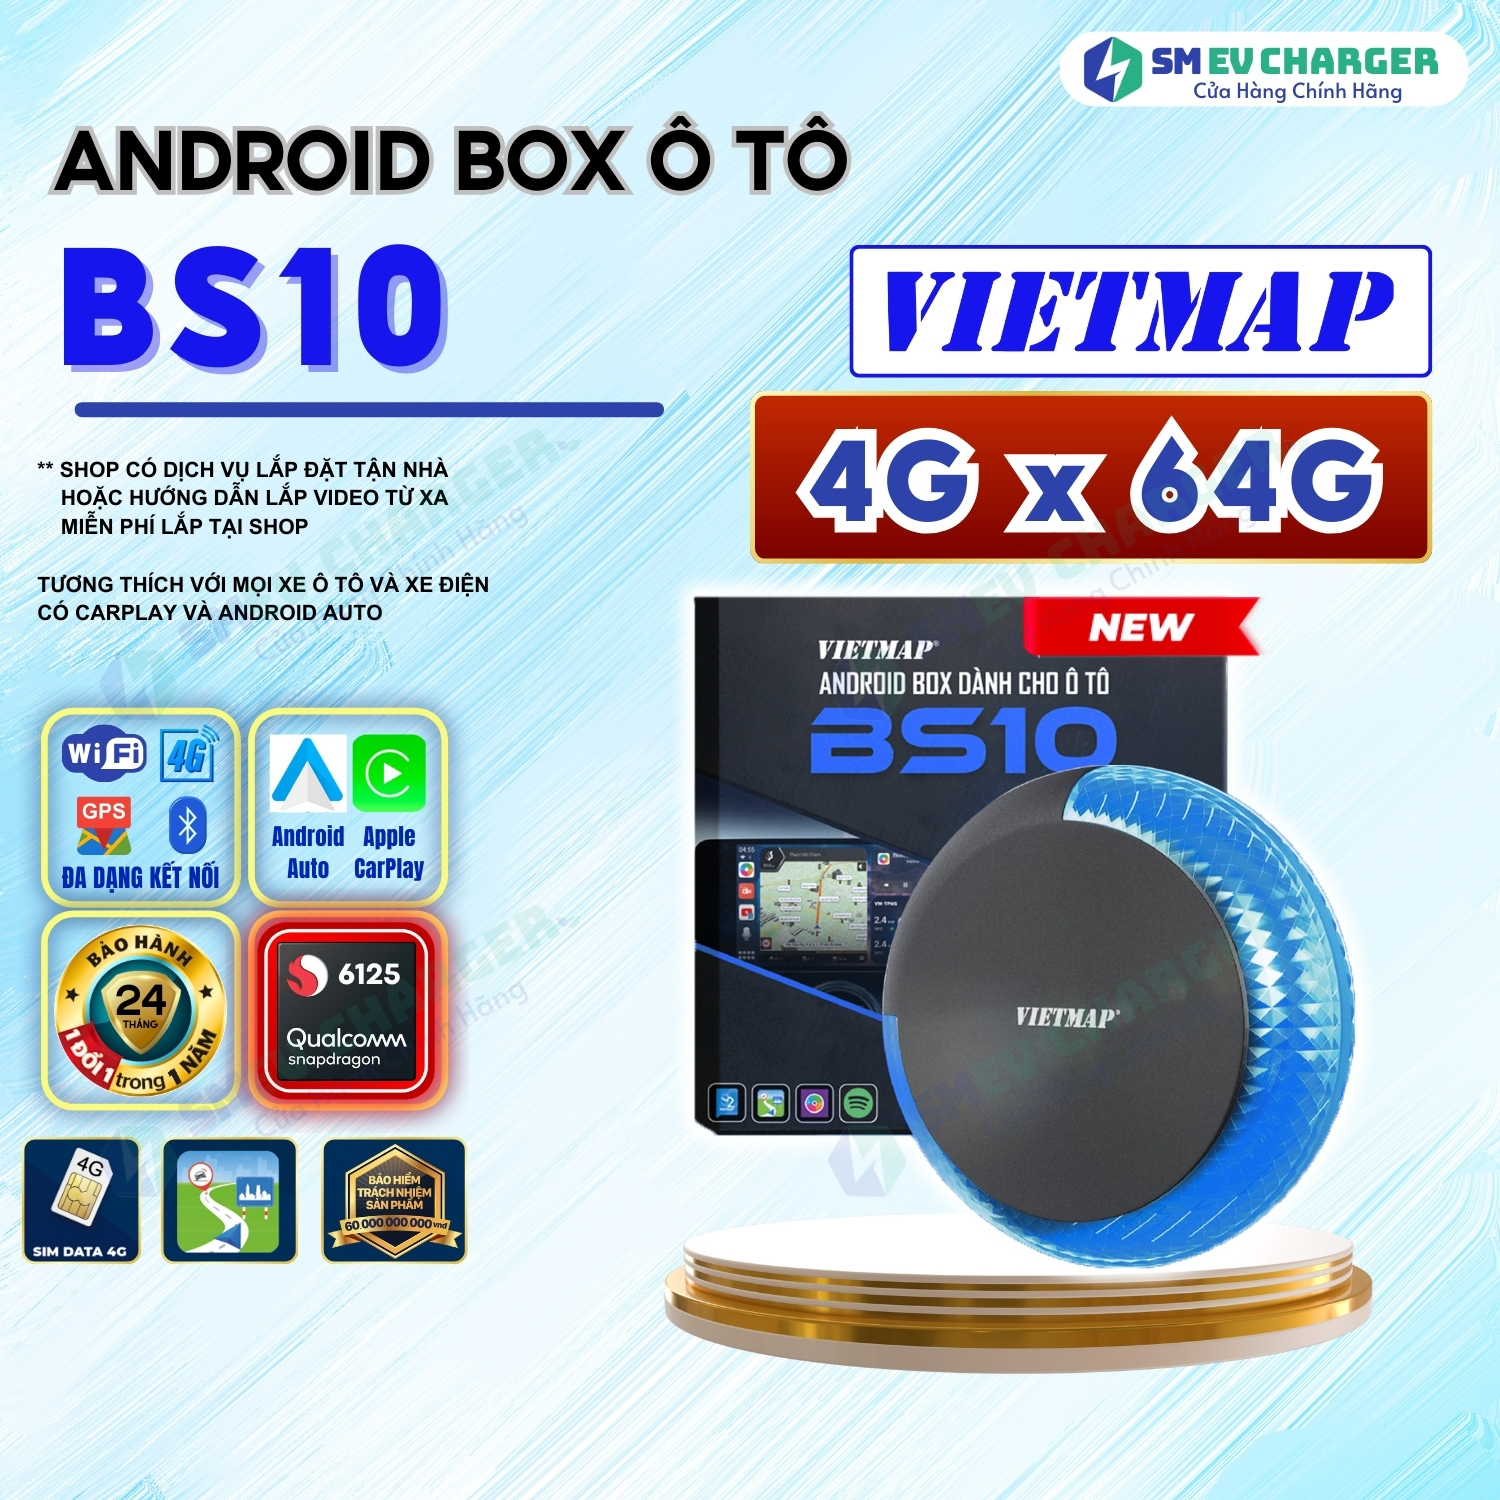 Android Box Vietmap BS10 - Tặng Vietmap Live Vietmap S2 - CarPlay và Android Auto thế hệ mới - SMEV Chính Hãng